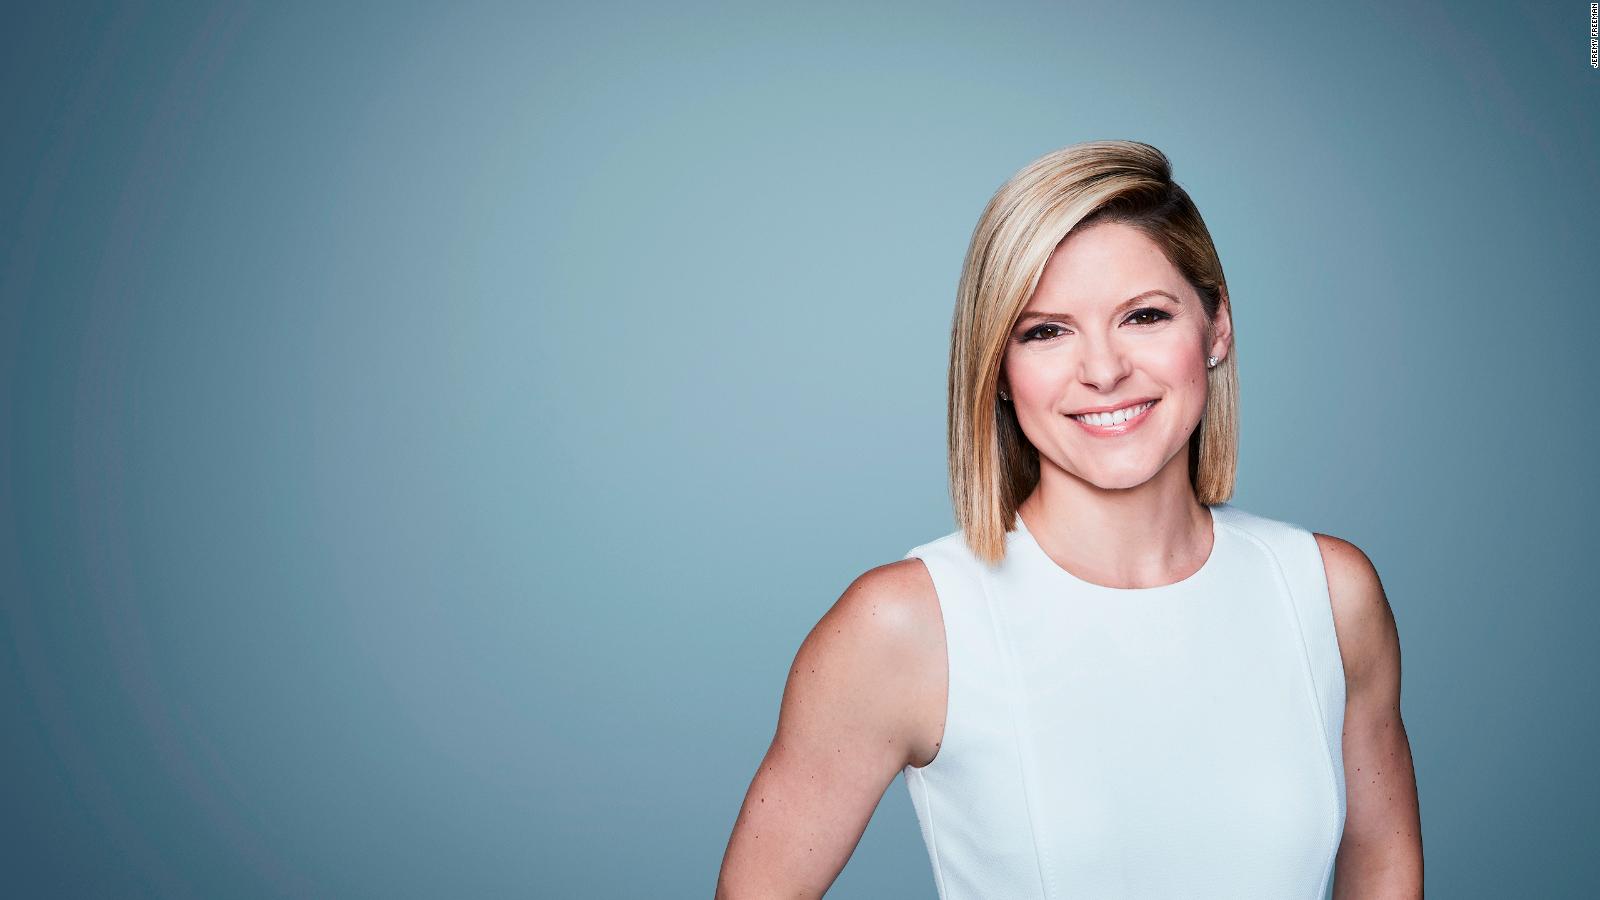 CNN Profiles - Kate - CNN